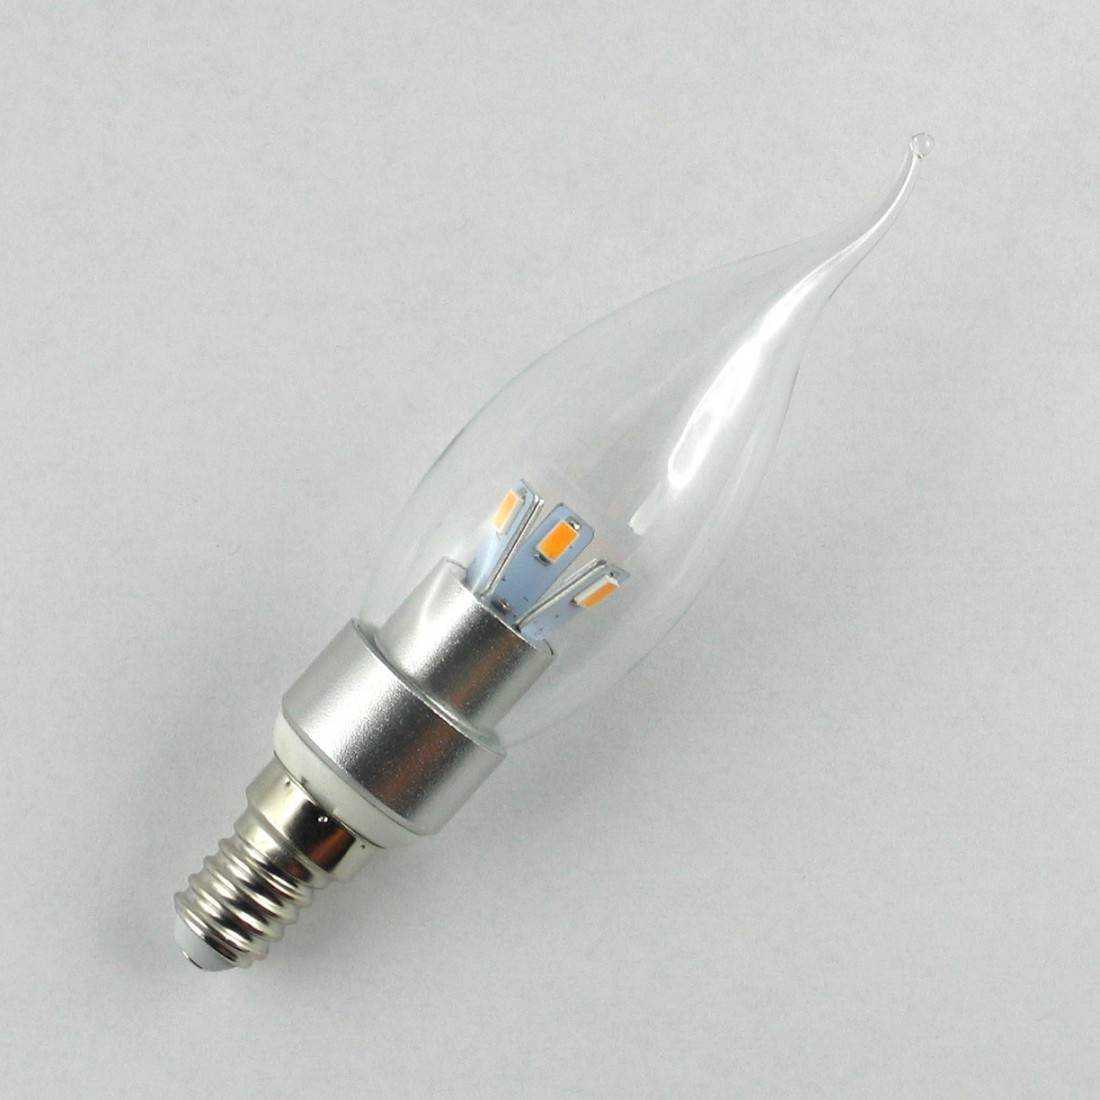 Ampoule LED E14 chez Design LED